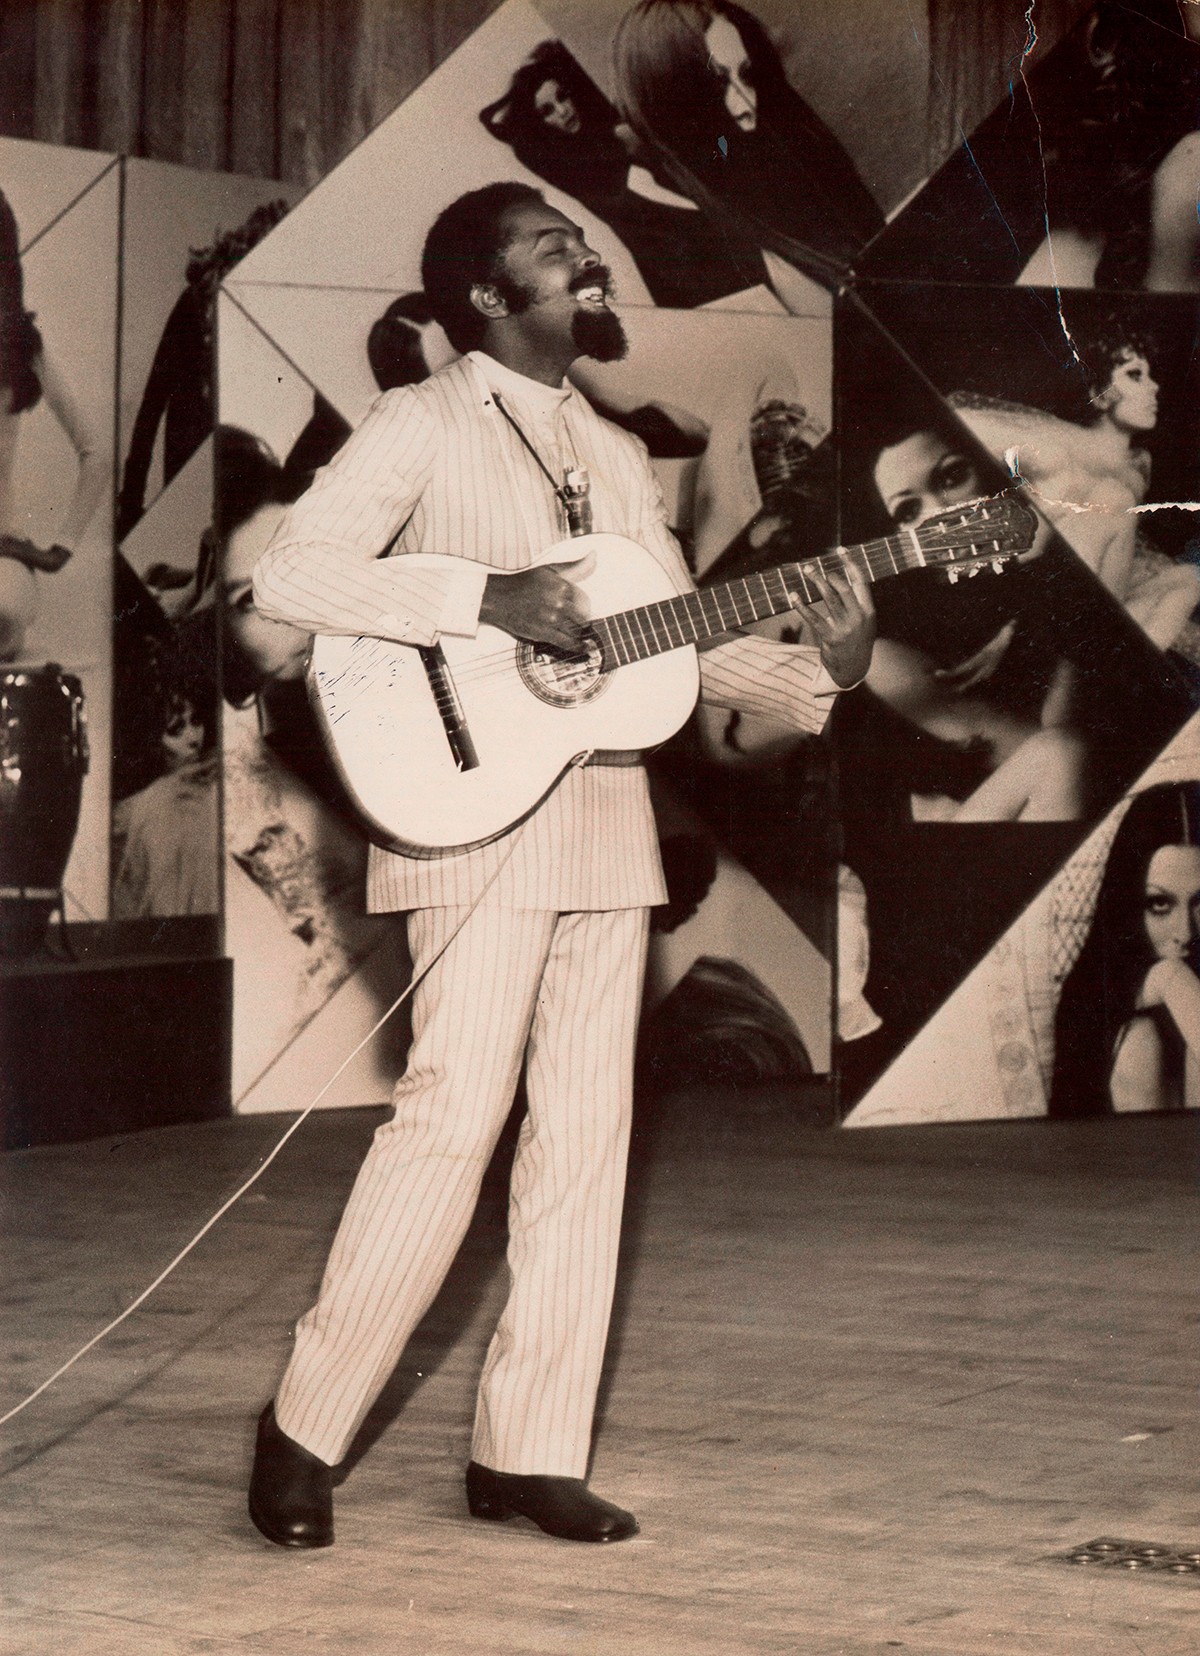 Gil se apresenta no festival de música de 1968, início da Tropicália  (Foto: Instituto Gilberto Gil / Google Arts & Culture / Divulgação)